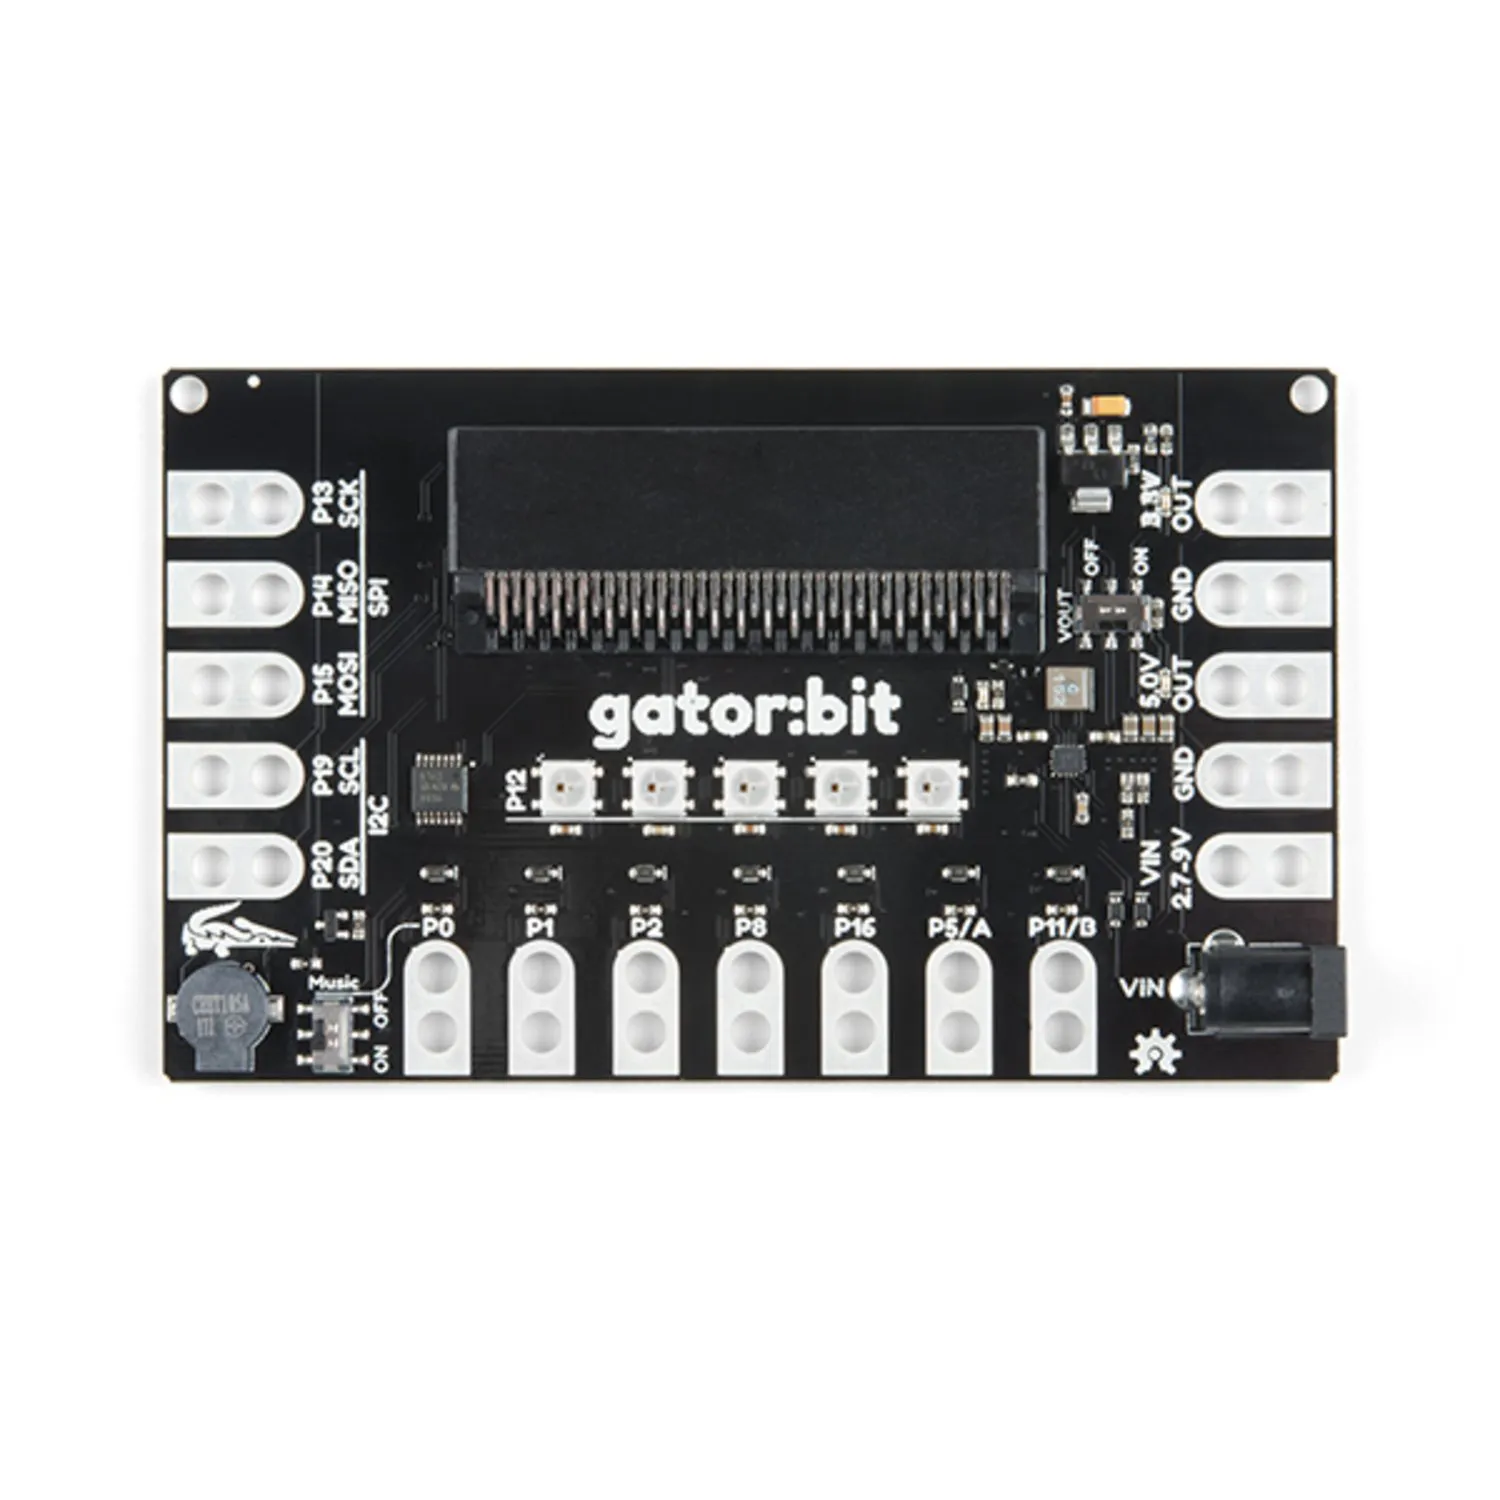 Photo of SparkFun gator:bit v2.0 - micro:bit Carrier Board